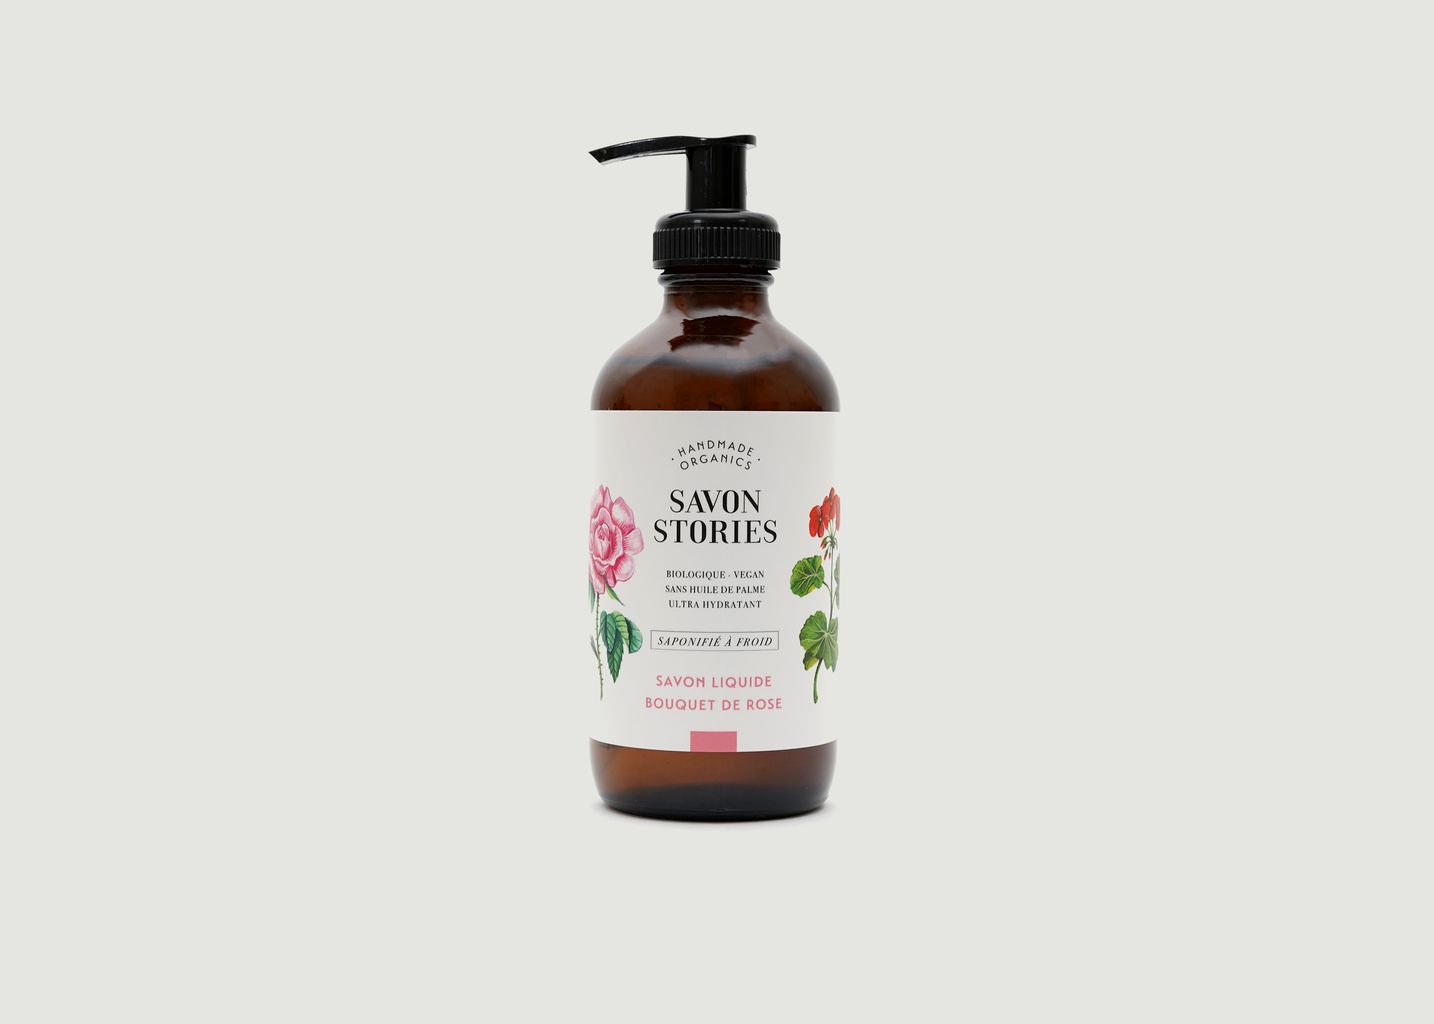 Savon liquide Bouquet de Rose (240ml) - Savon Stories